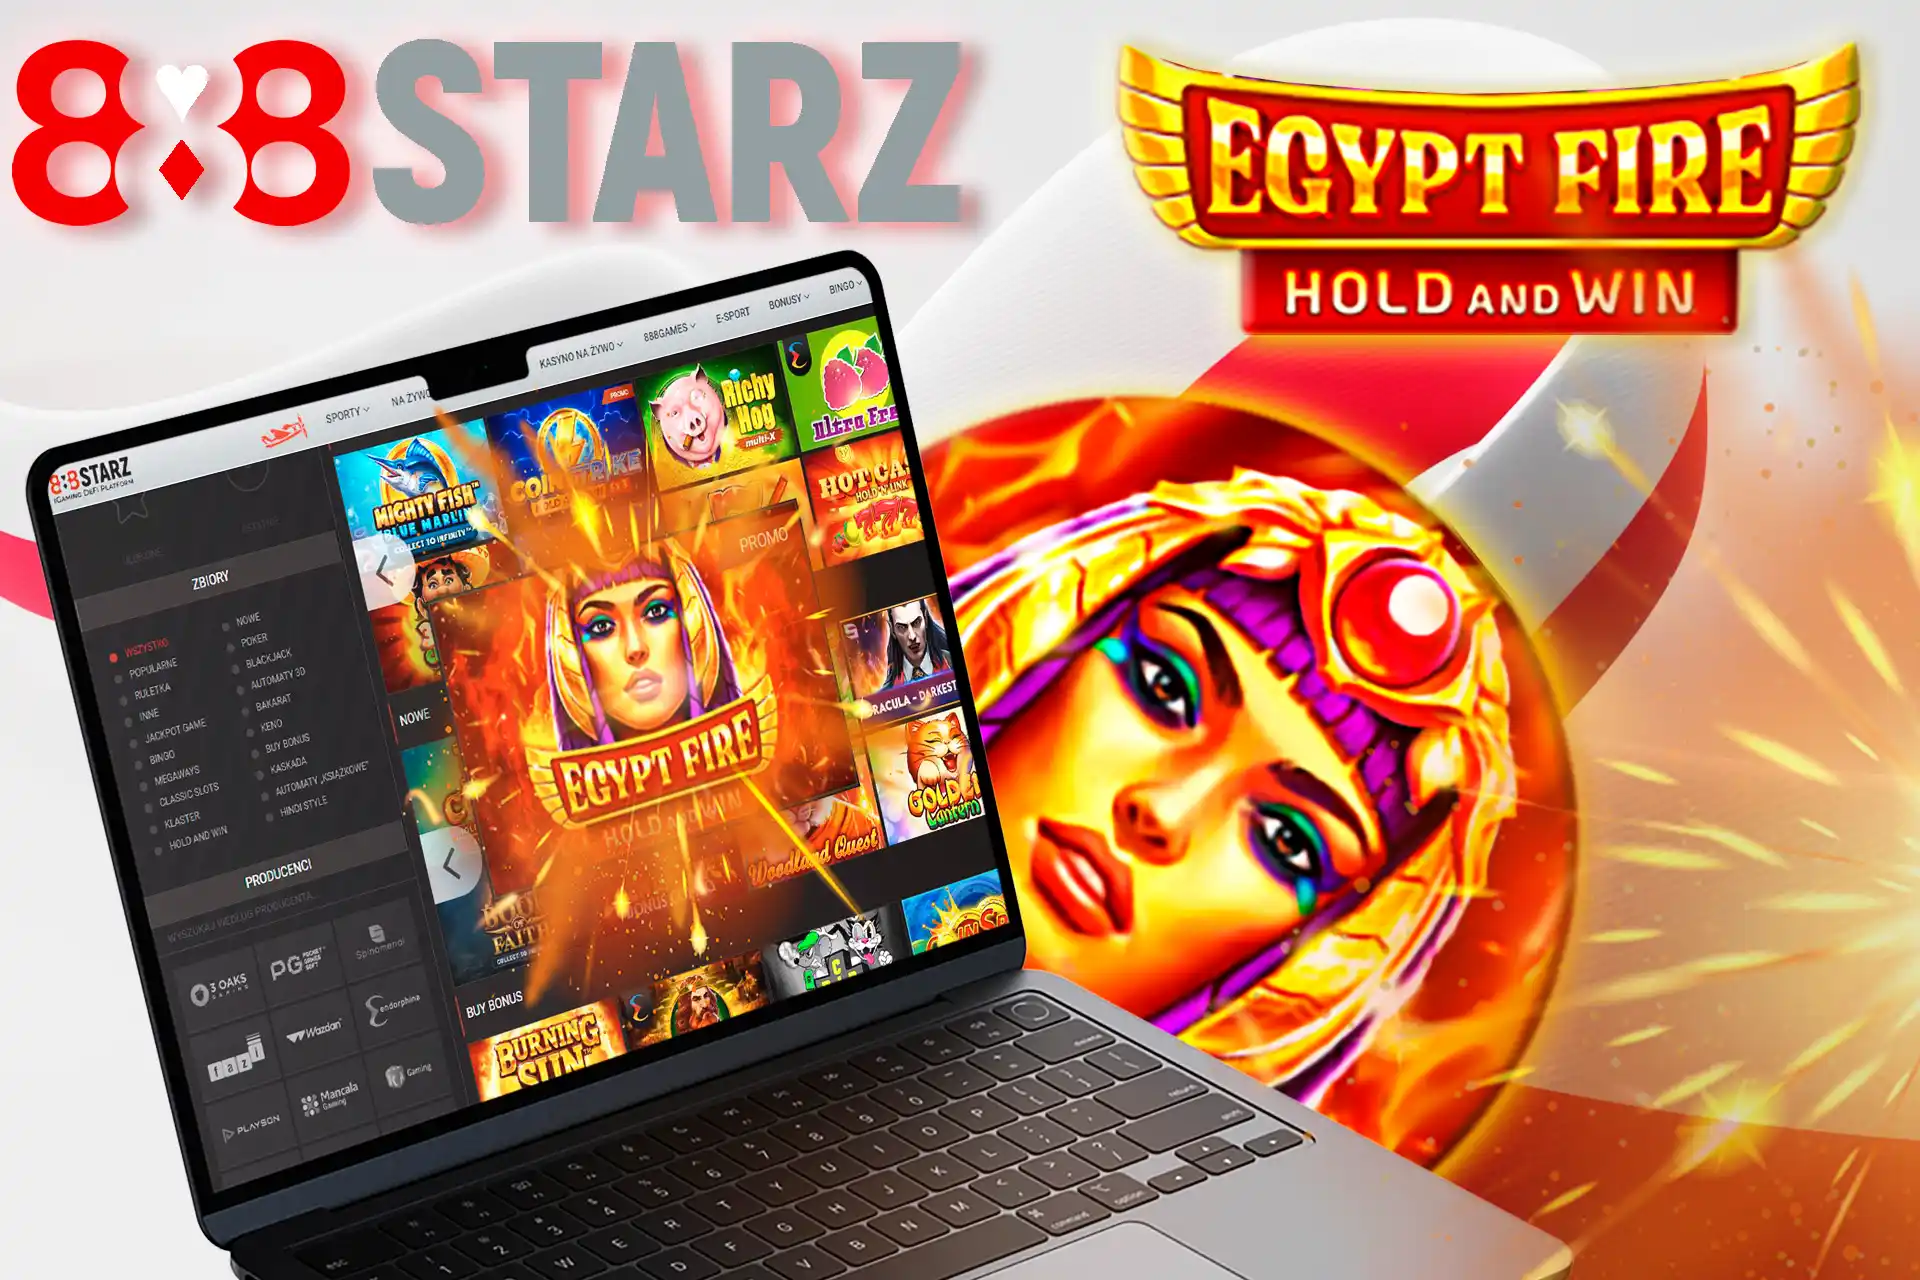 Zagraj w Egypt Fire: Hold and Win na 888starz